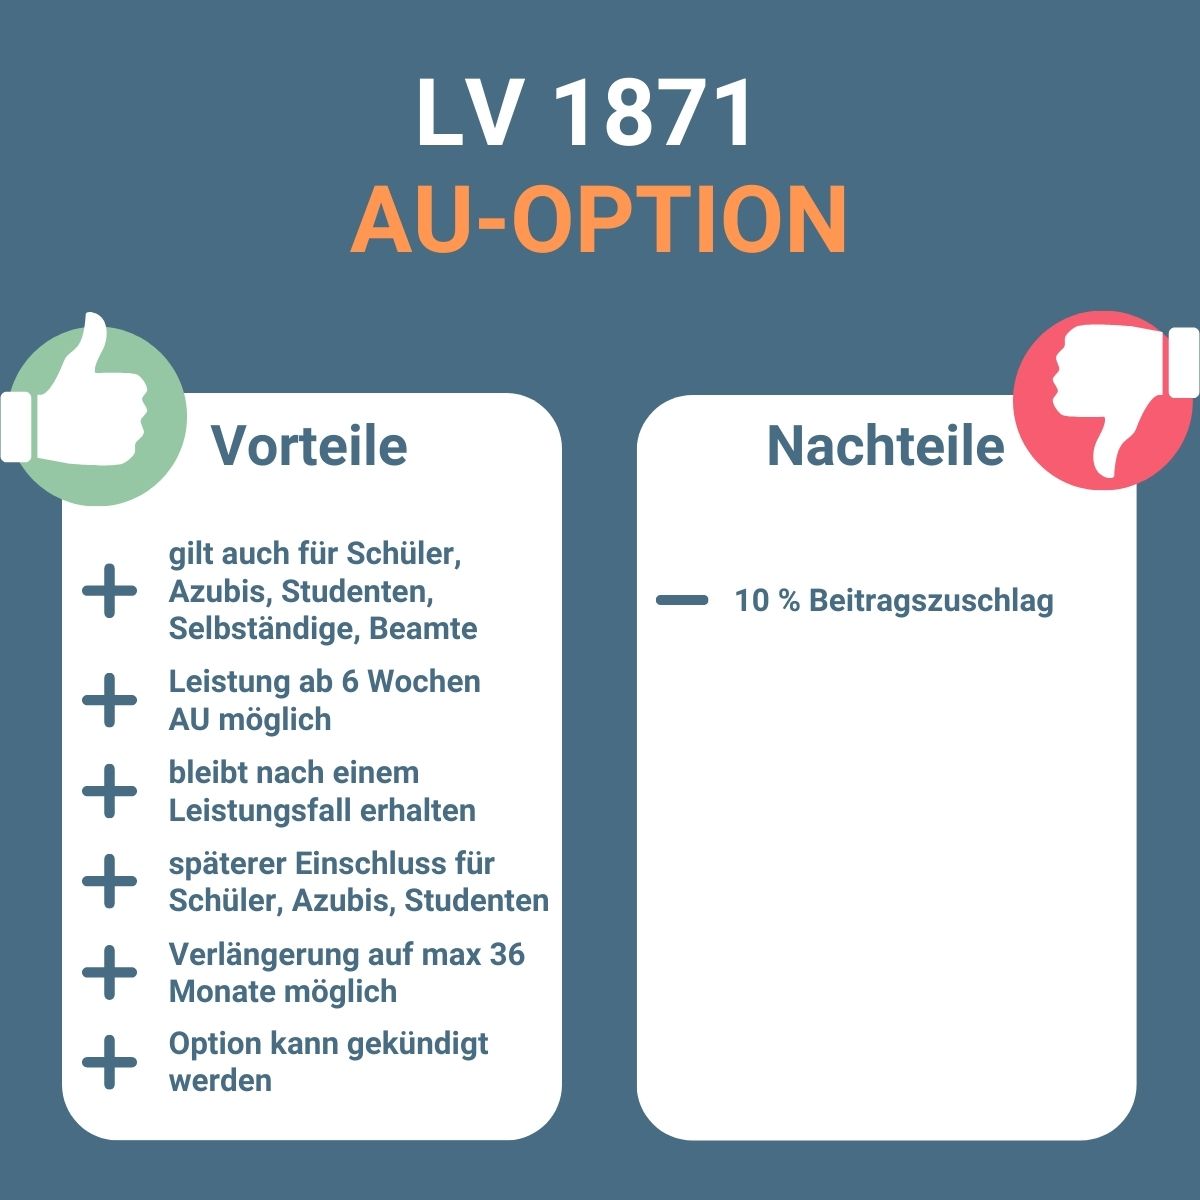 Infografik zu Vorteilen und Nachteilen der AU-Option bei der LV 1871.